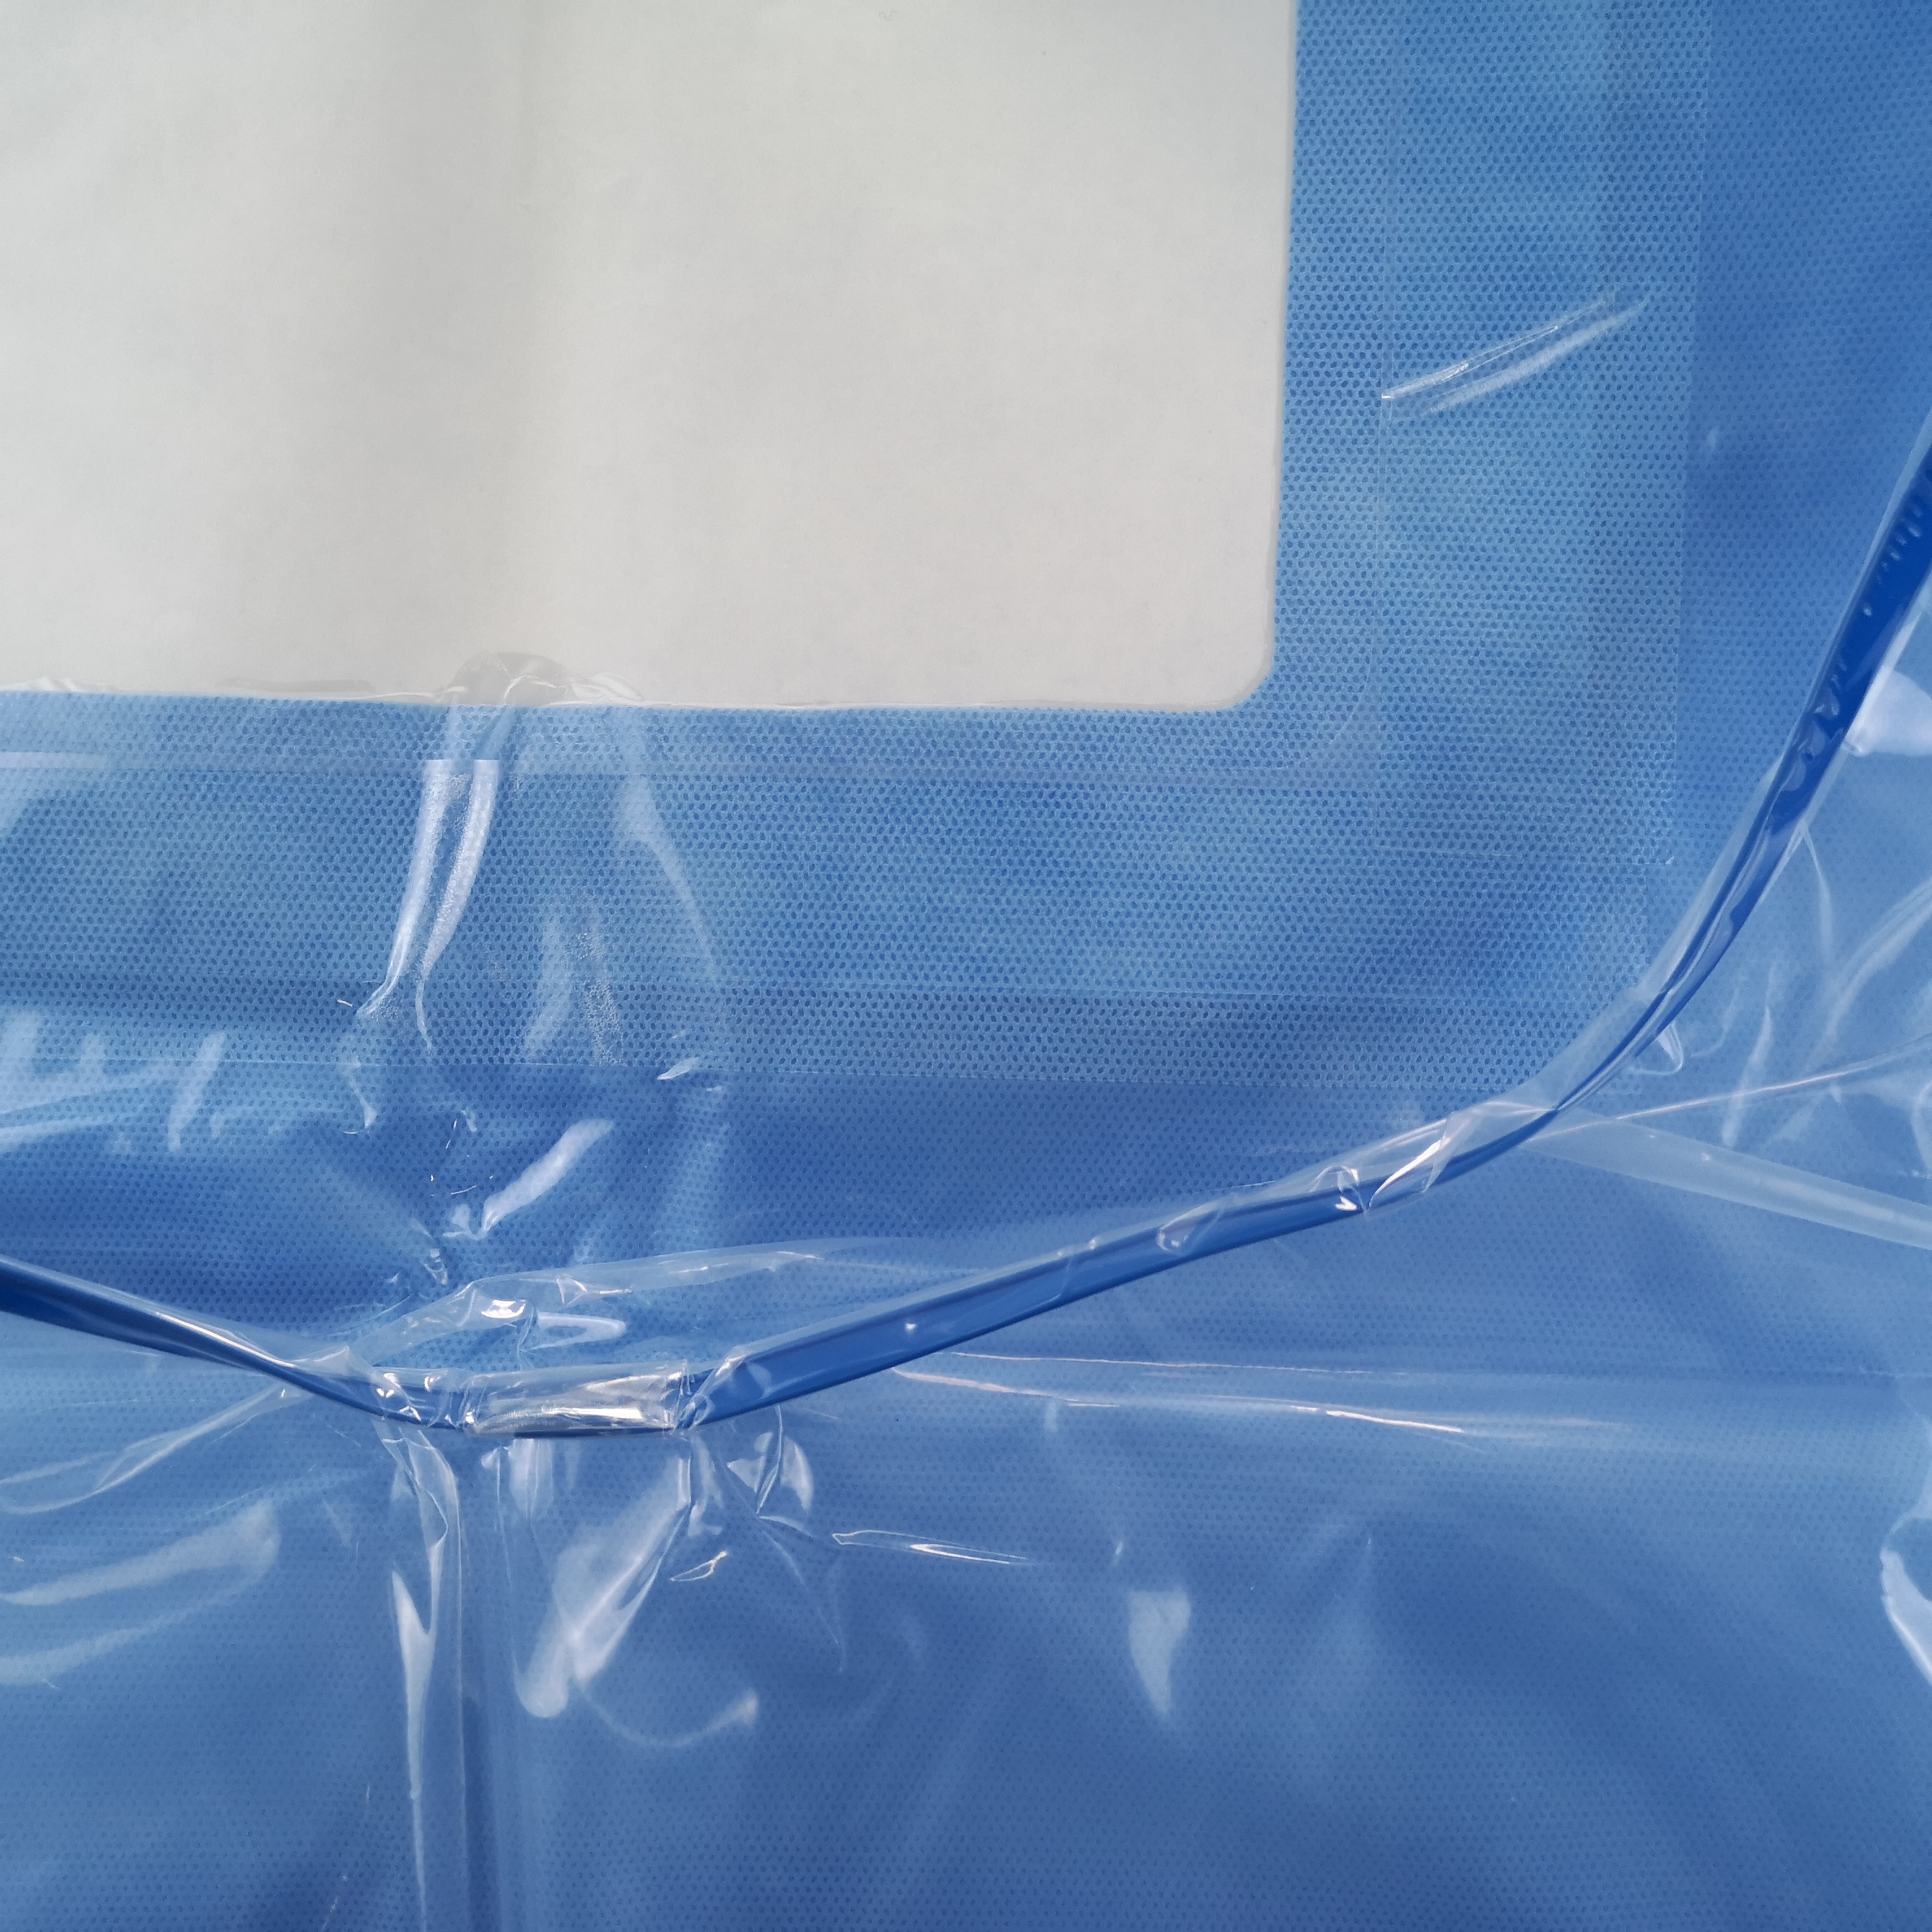 OEM Meistverkaufte medizinische Kaiserschnitt-Geburtsvorhänge-Kits Hersteller mit CE ISO13485-Zertifizierung
